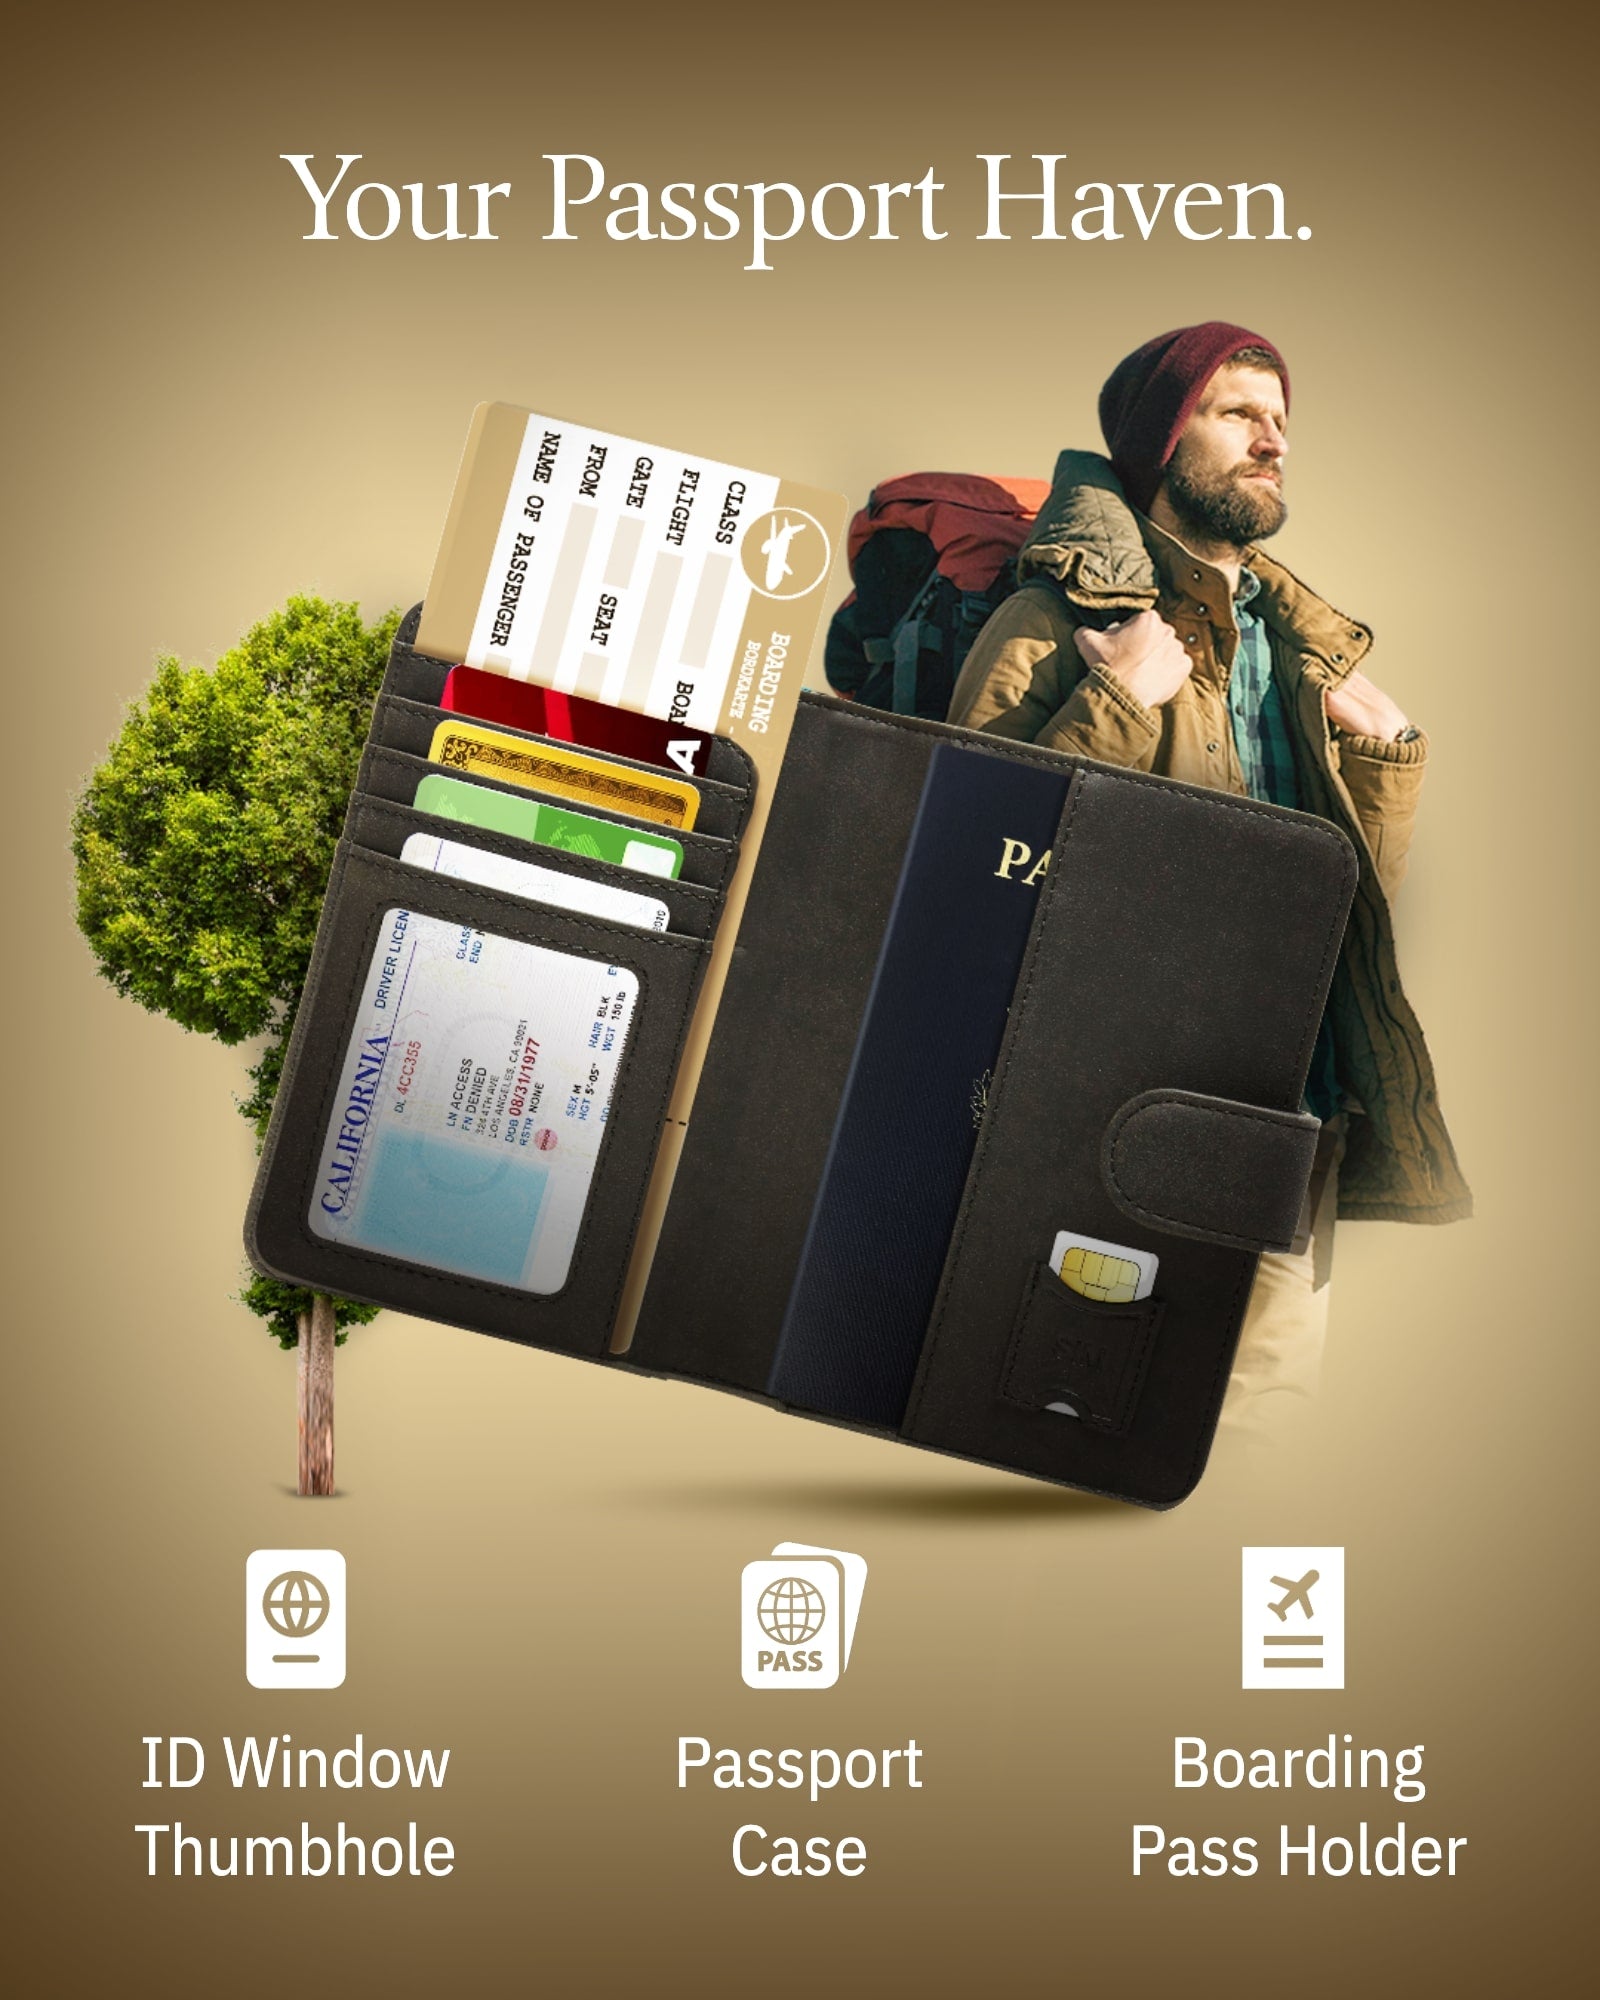 Buy Passport Wallet Travel Wallet Organizer Clutch Wallet Online in India 